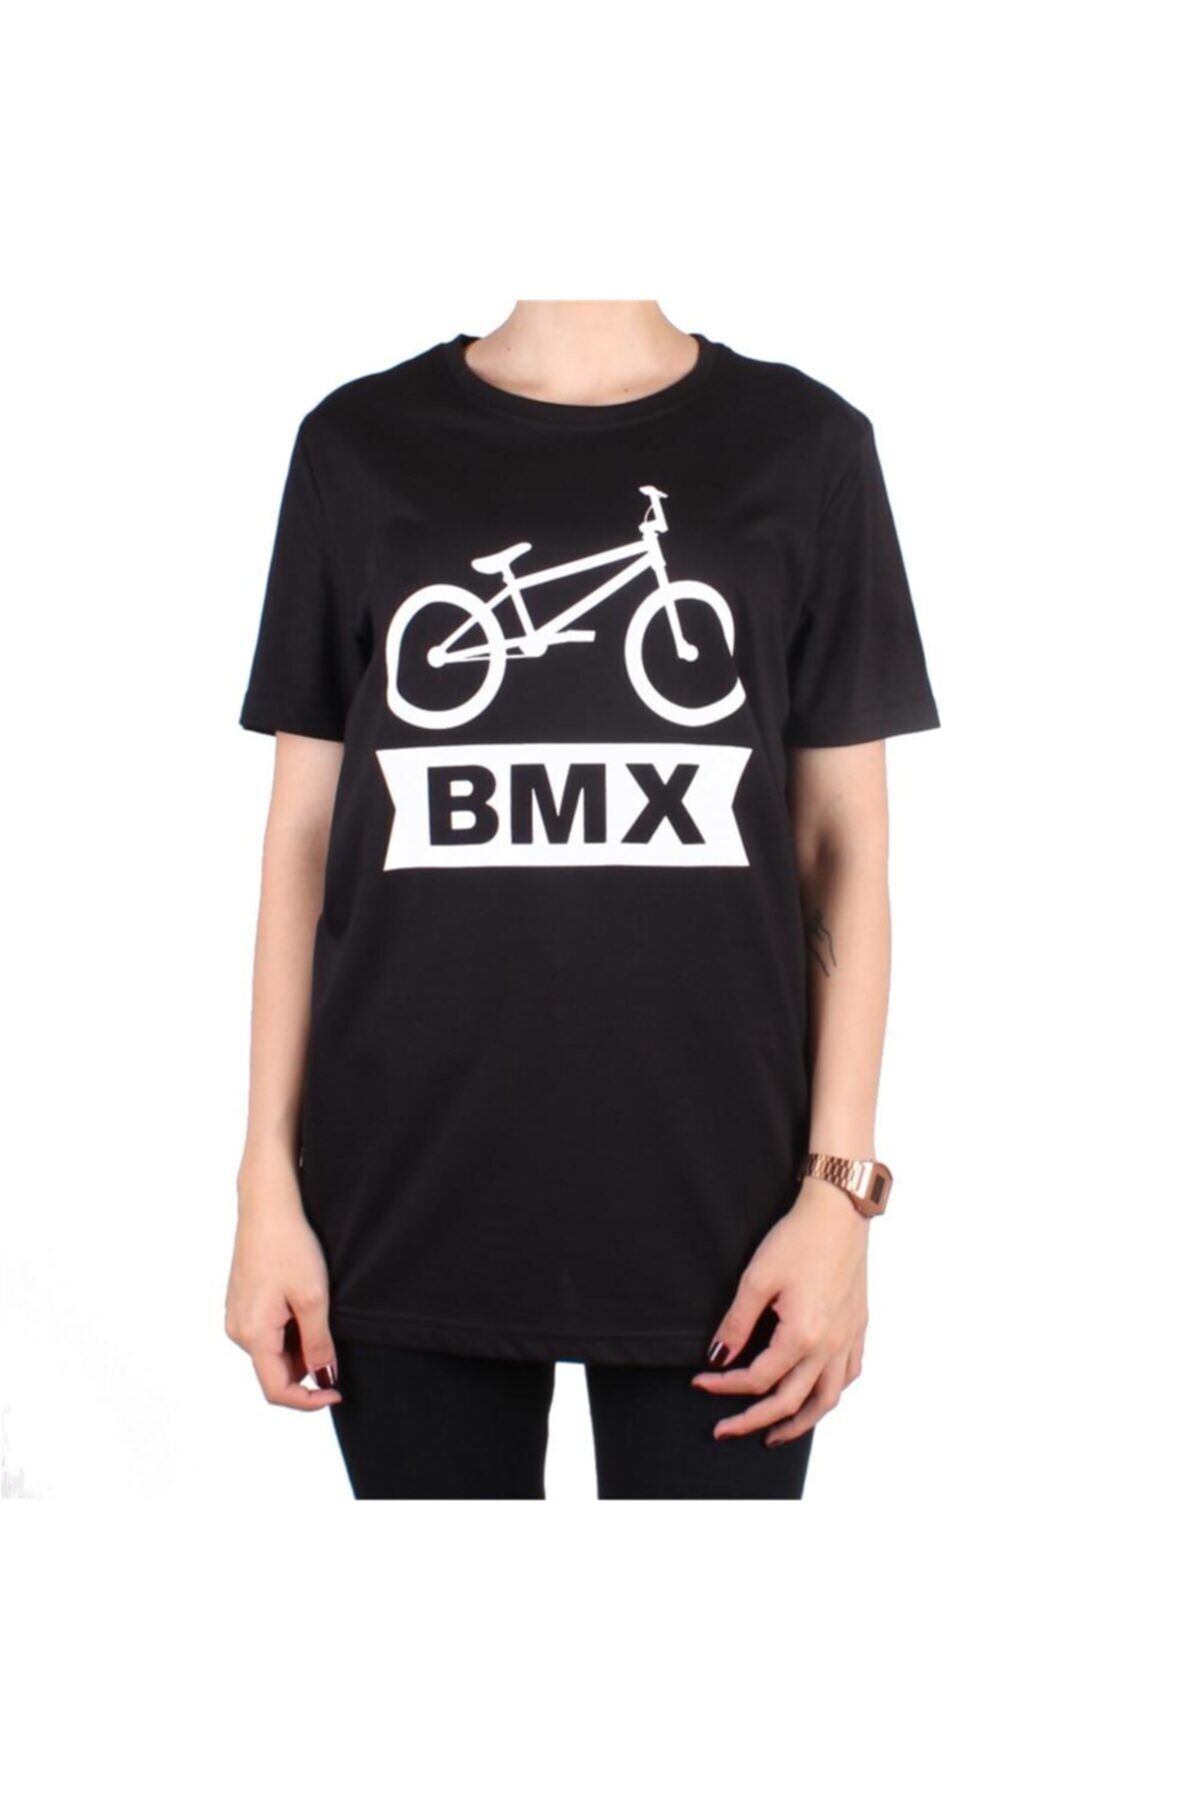 Backto84 Bmx Bisiklet Tişörtü